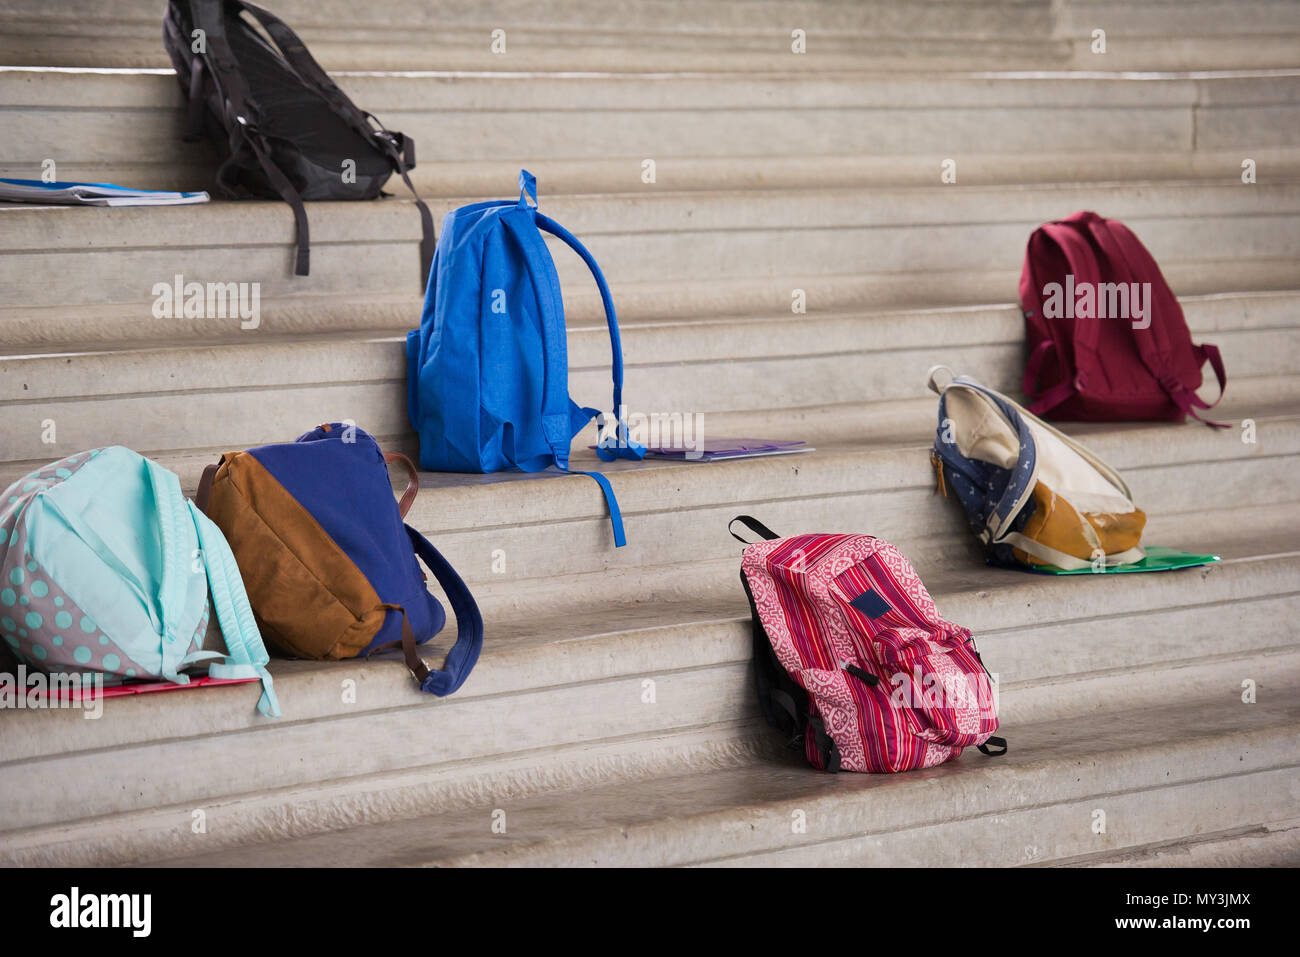 Backpacks left on bleachers Stock Photo